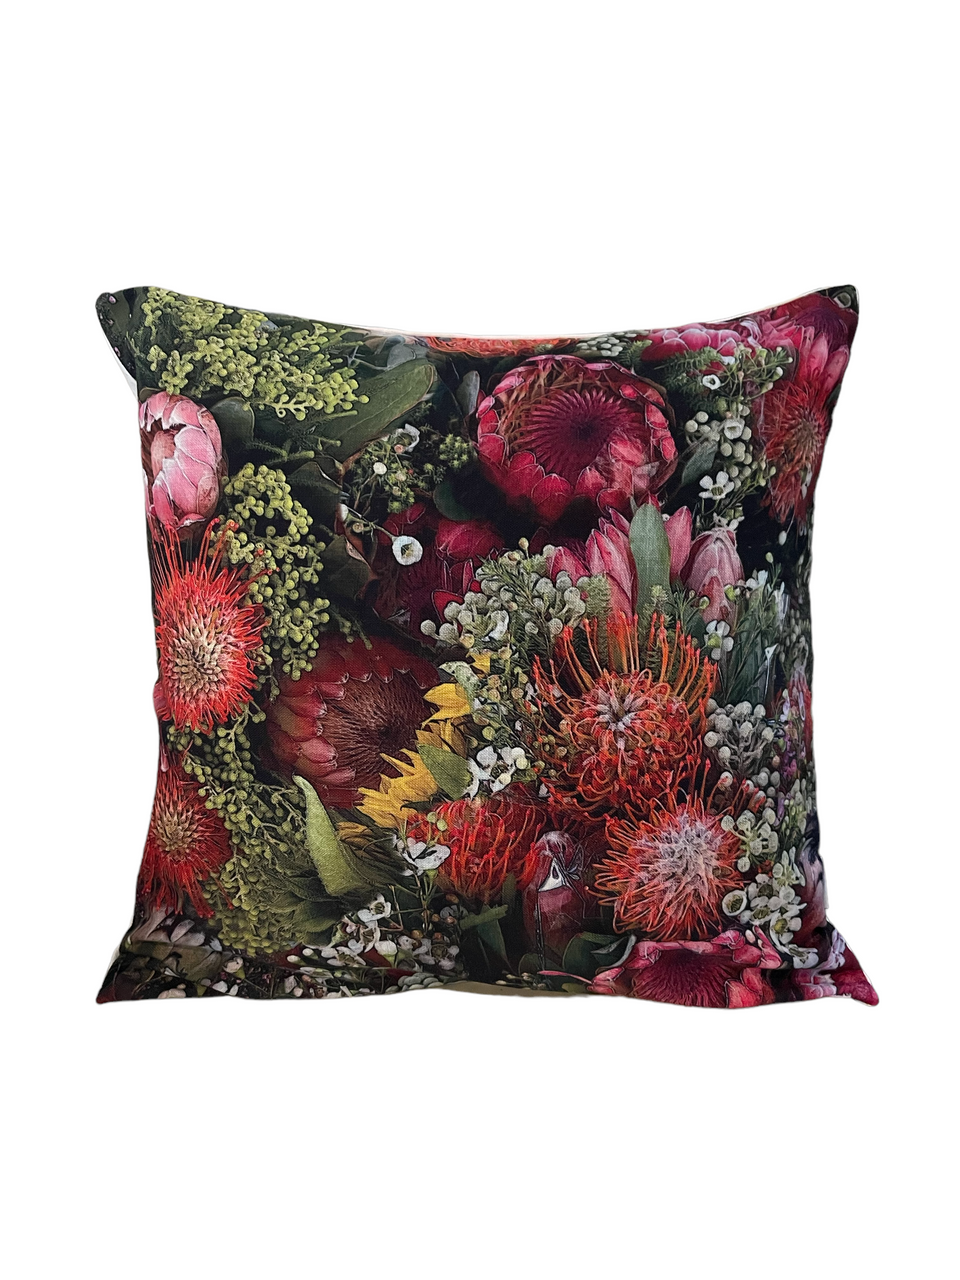 Pincushion Protea Pillow Cover